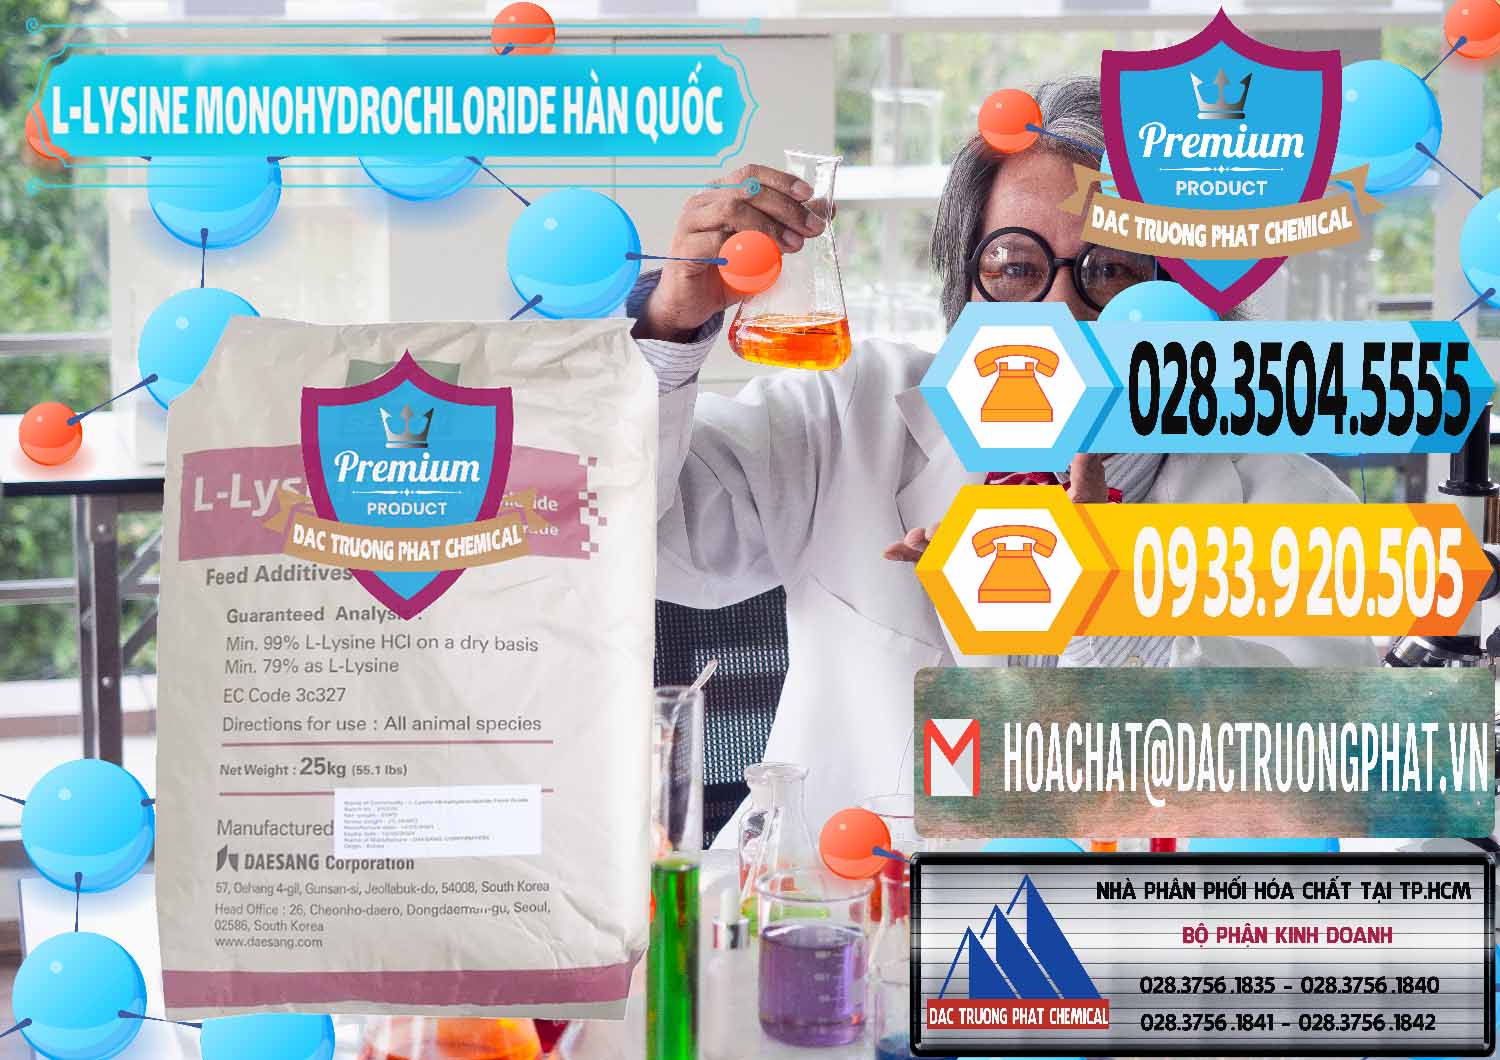 Công ty bán _ phân phối L-Lysine Monohydrochloride Feed Grade Sewon Hàn Quốc Korea - 0302 - Cty phân phối ( kinh doanh ) hóa chất tại TP.HCM - hoachattayrua.net